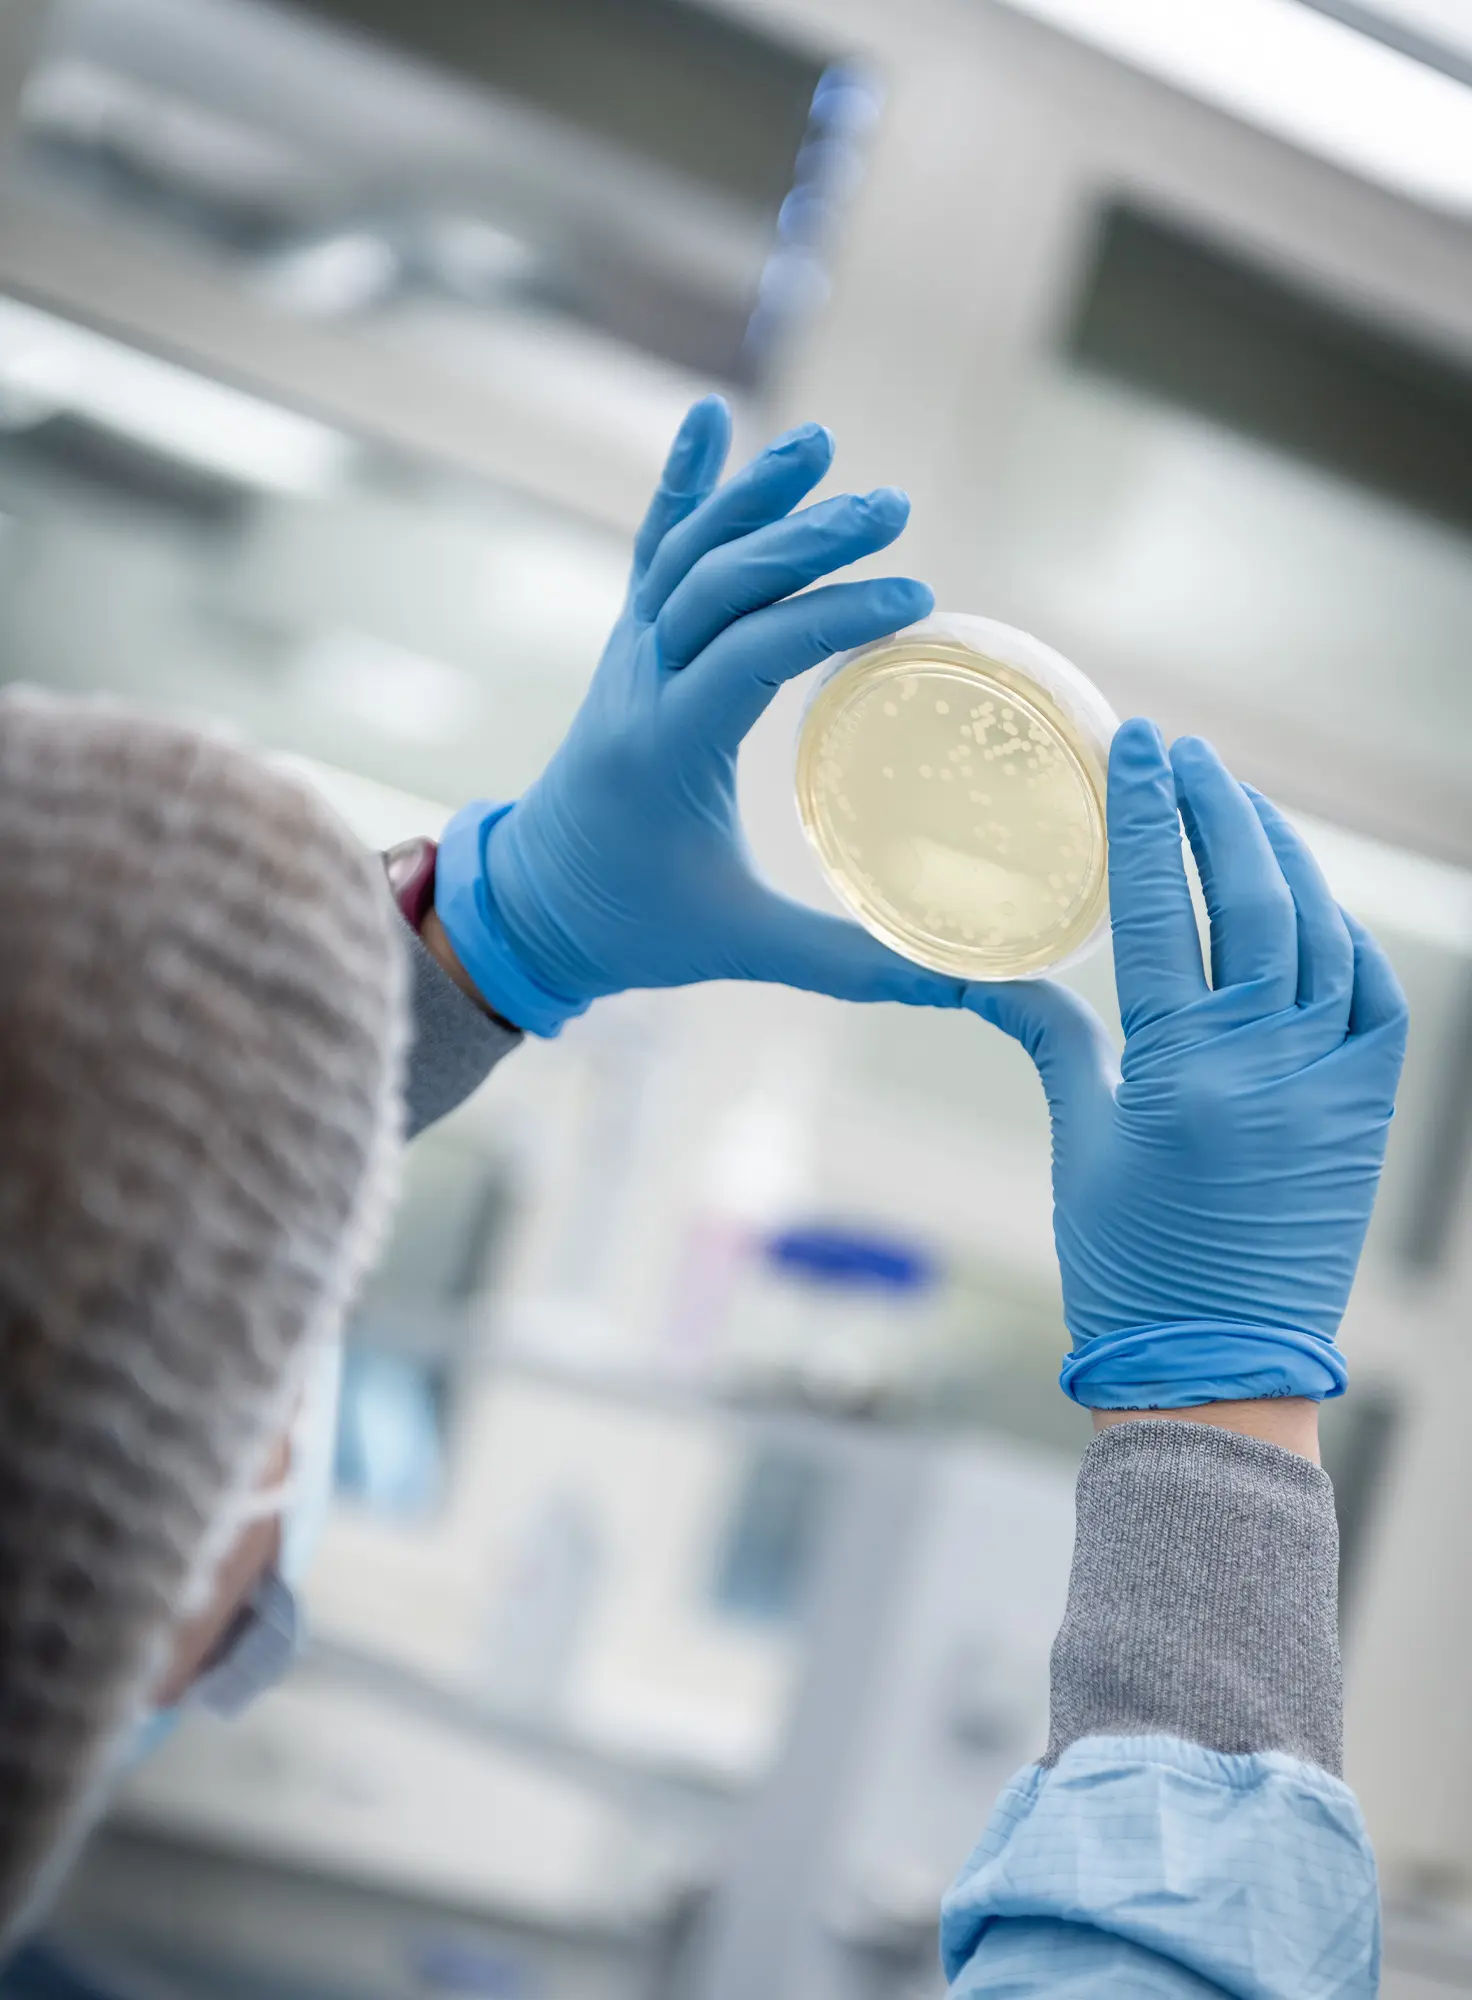 Lab technician checks the contents of a Petri dish